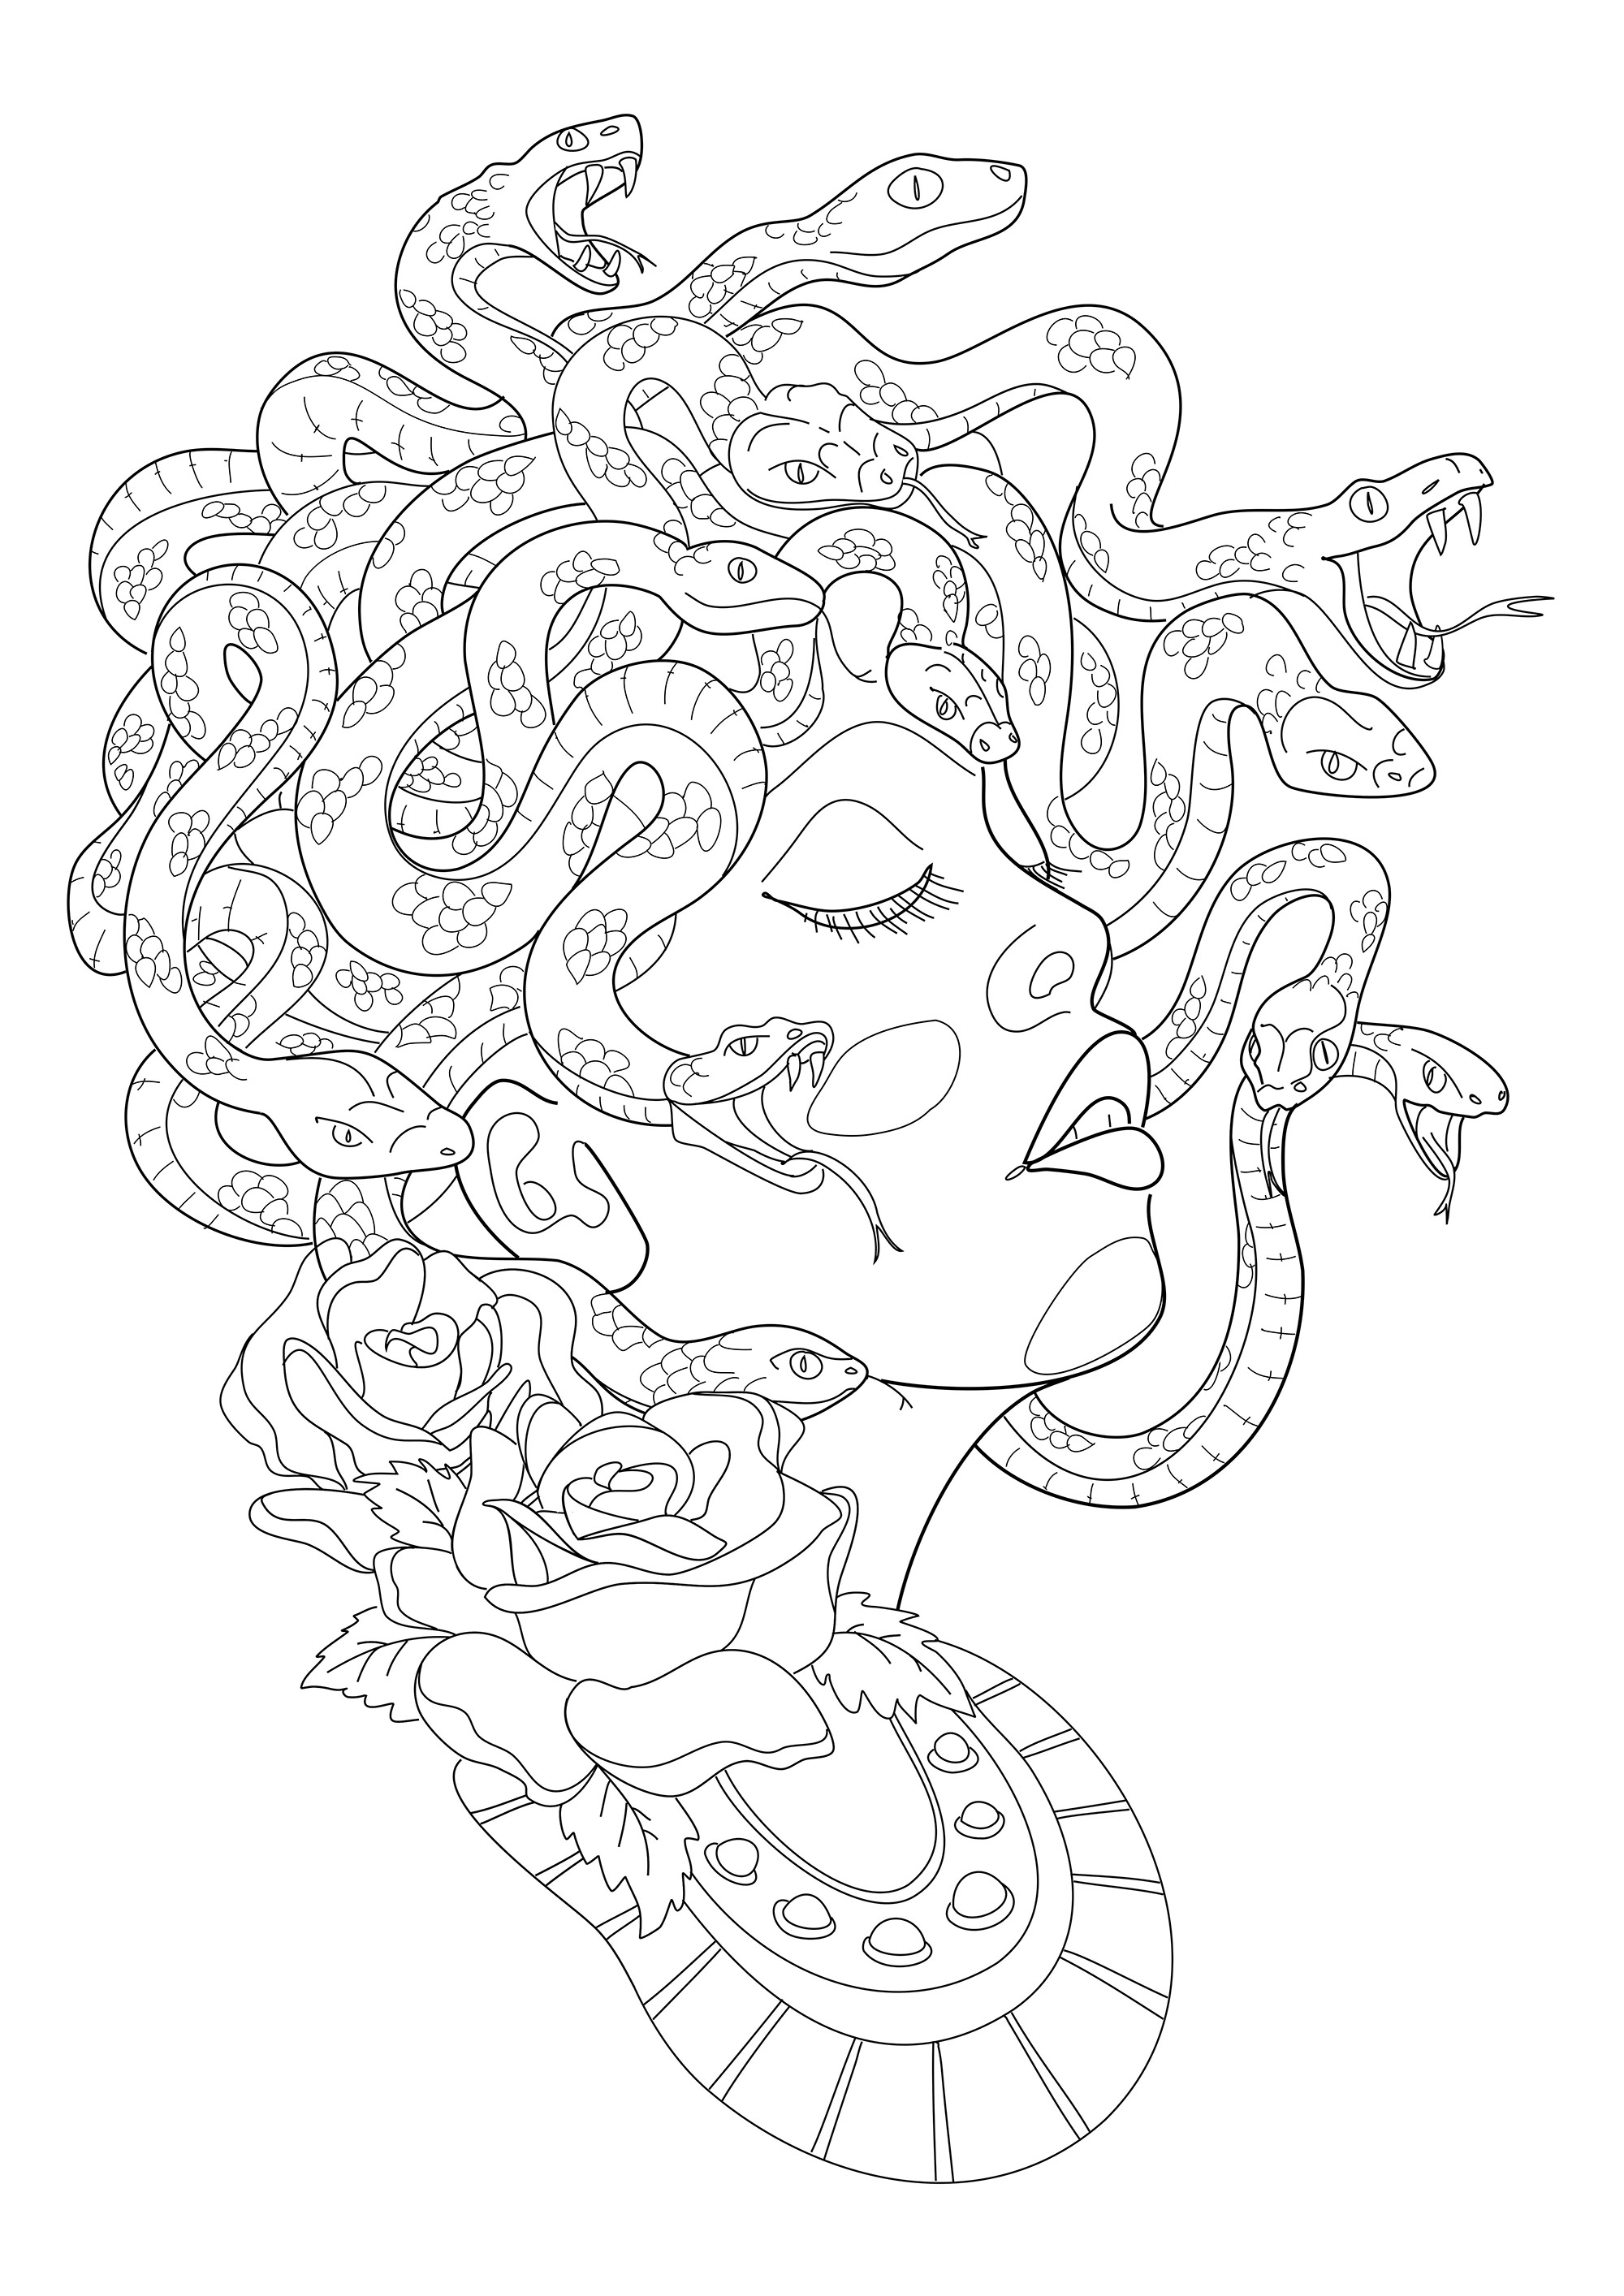 Medusa vista de perfil, con sus temibles serpientes formando su cabellera. Extracto de 'Realistic Tattoos Coloring Book' de Roberto 'Gi, Artista : Roberto Gemori